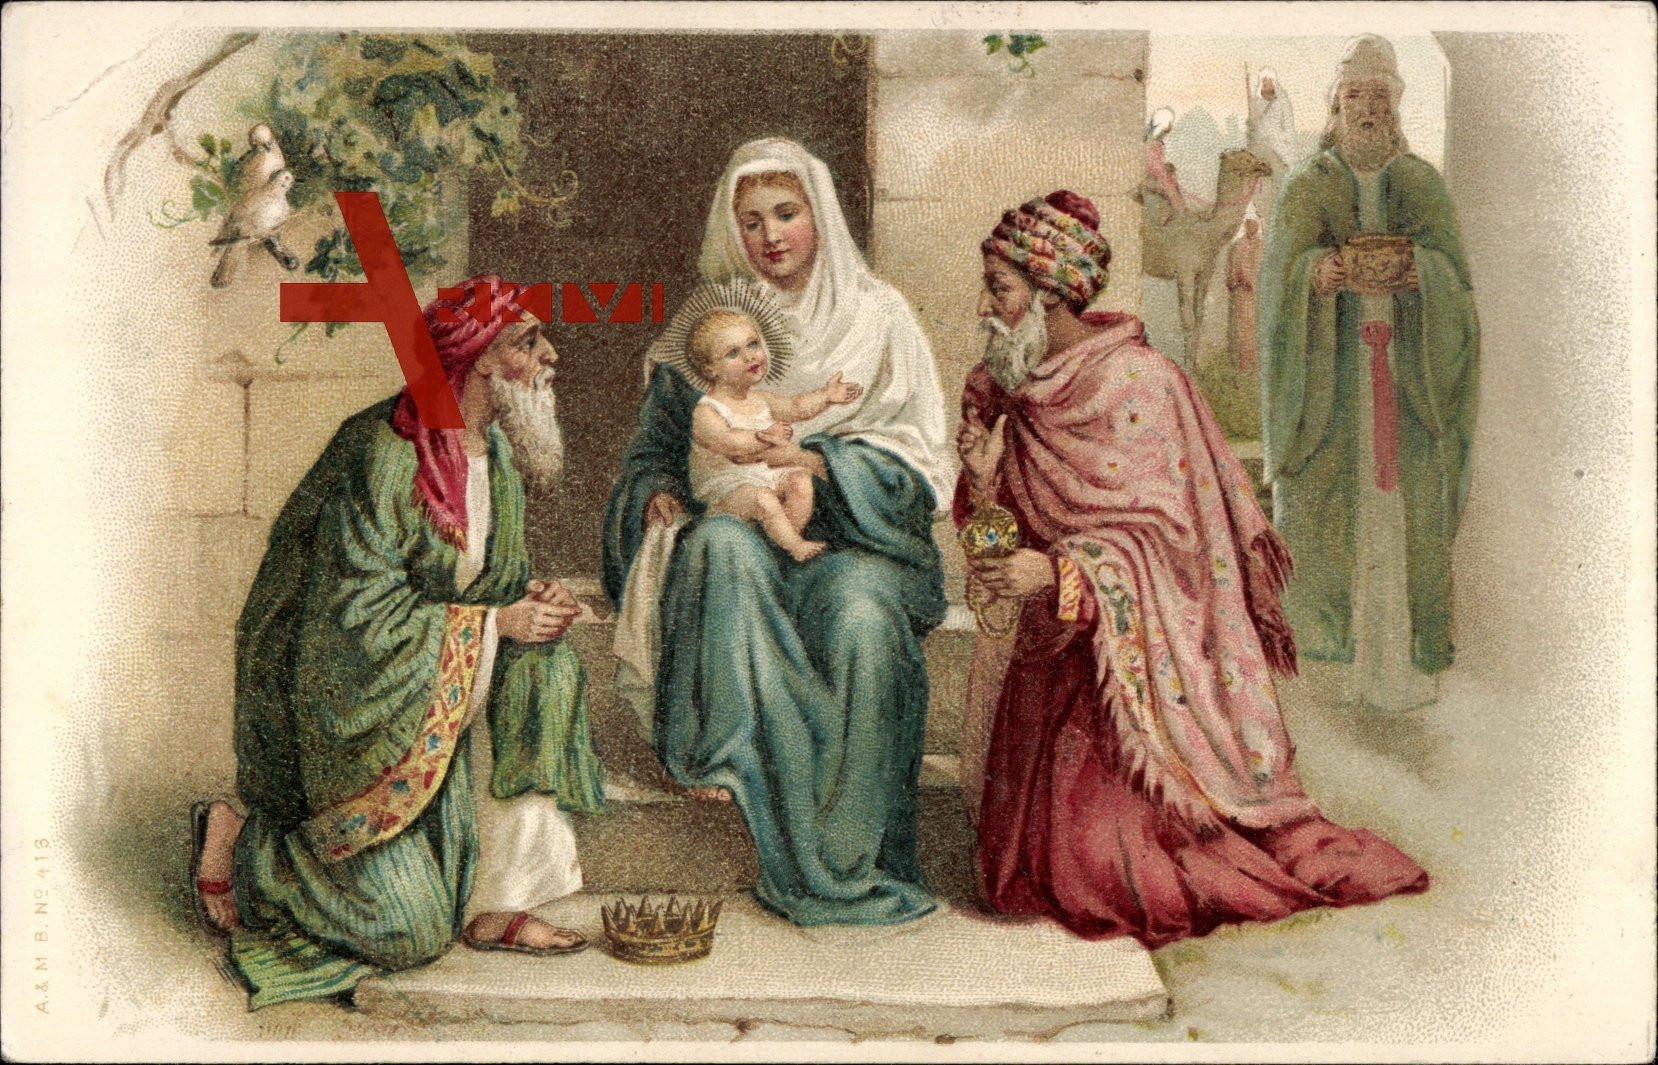 Geschenke Heilige Drei Könige
 Maria mit dem Jesuskind Heilige drei Könige Geschenke